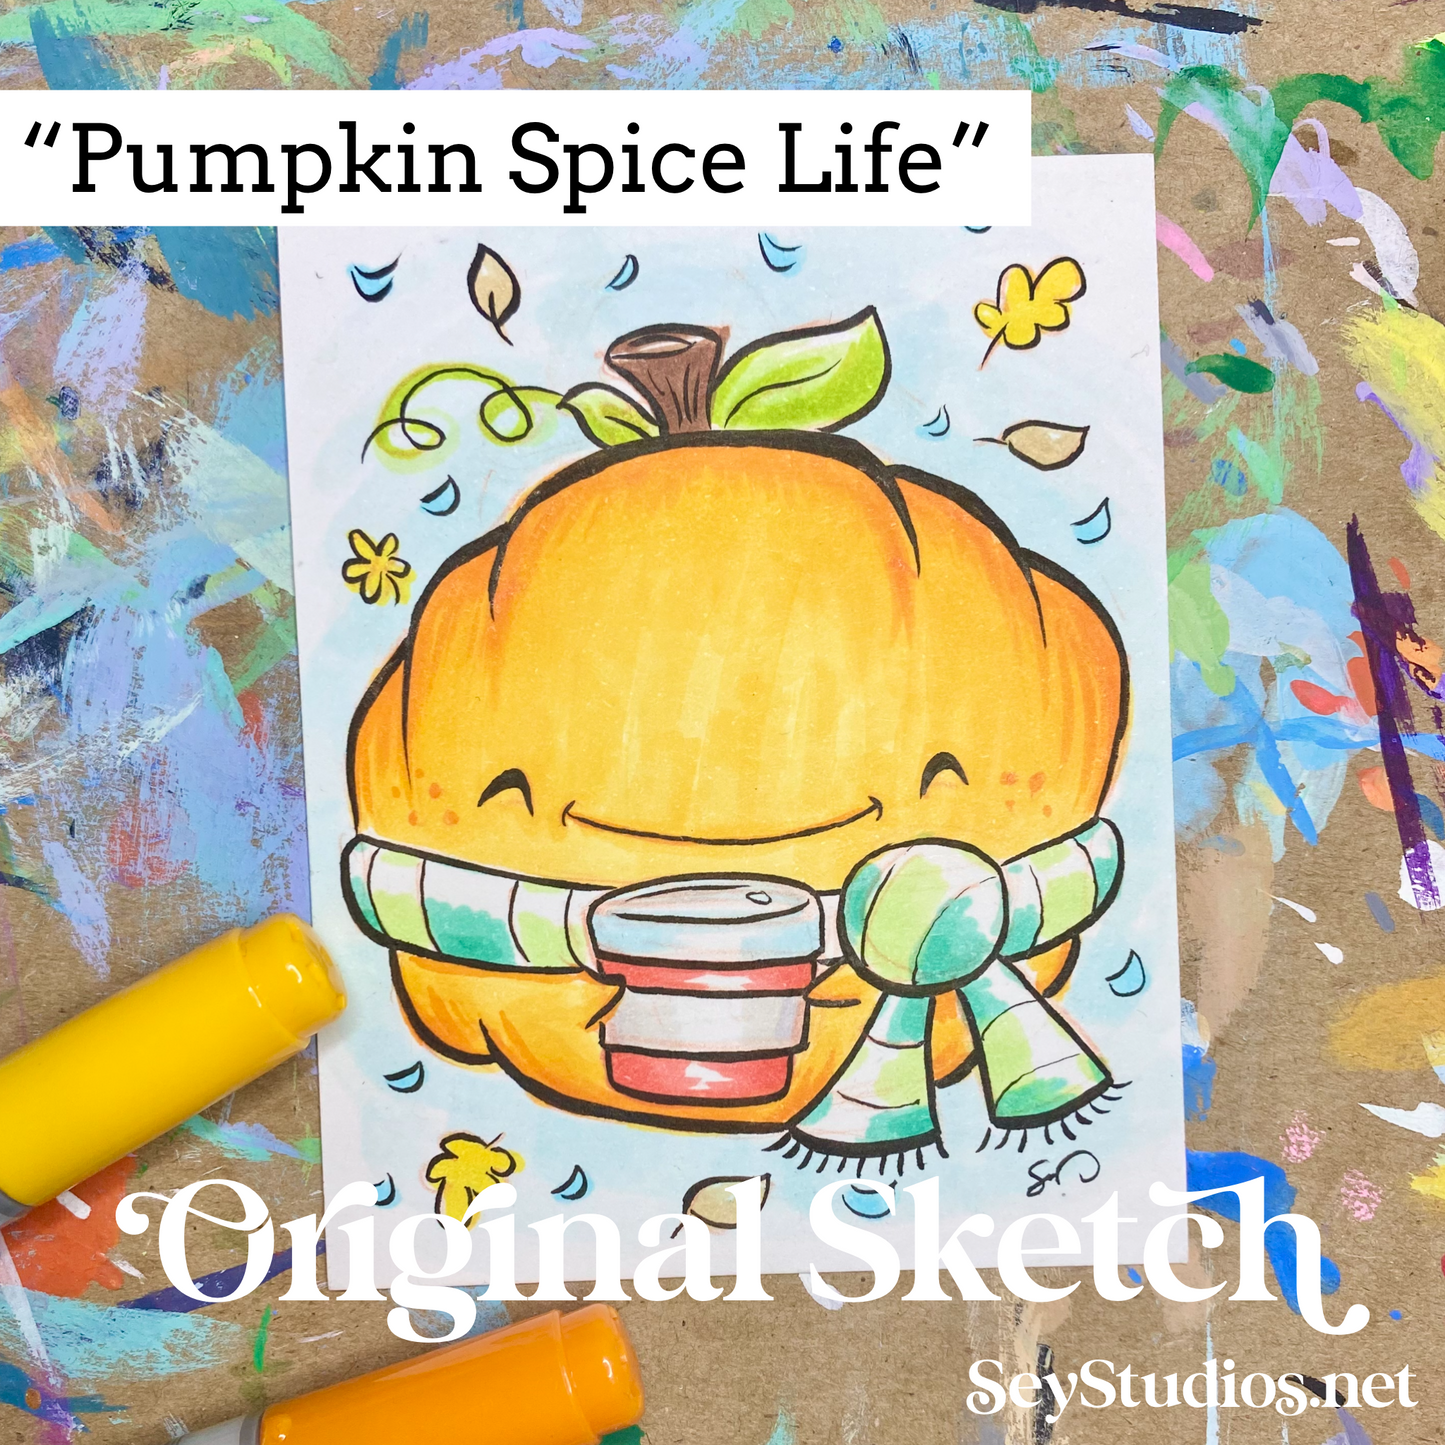 Original - "Pumpkin Spice Life” Sketch